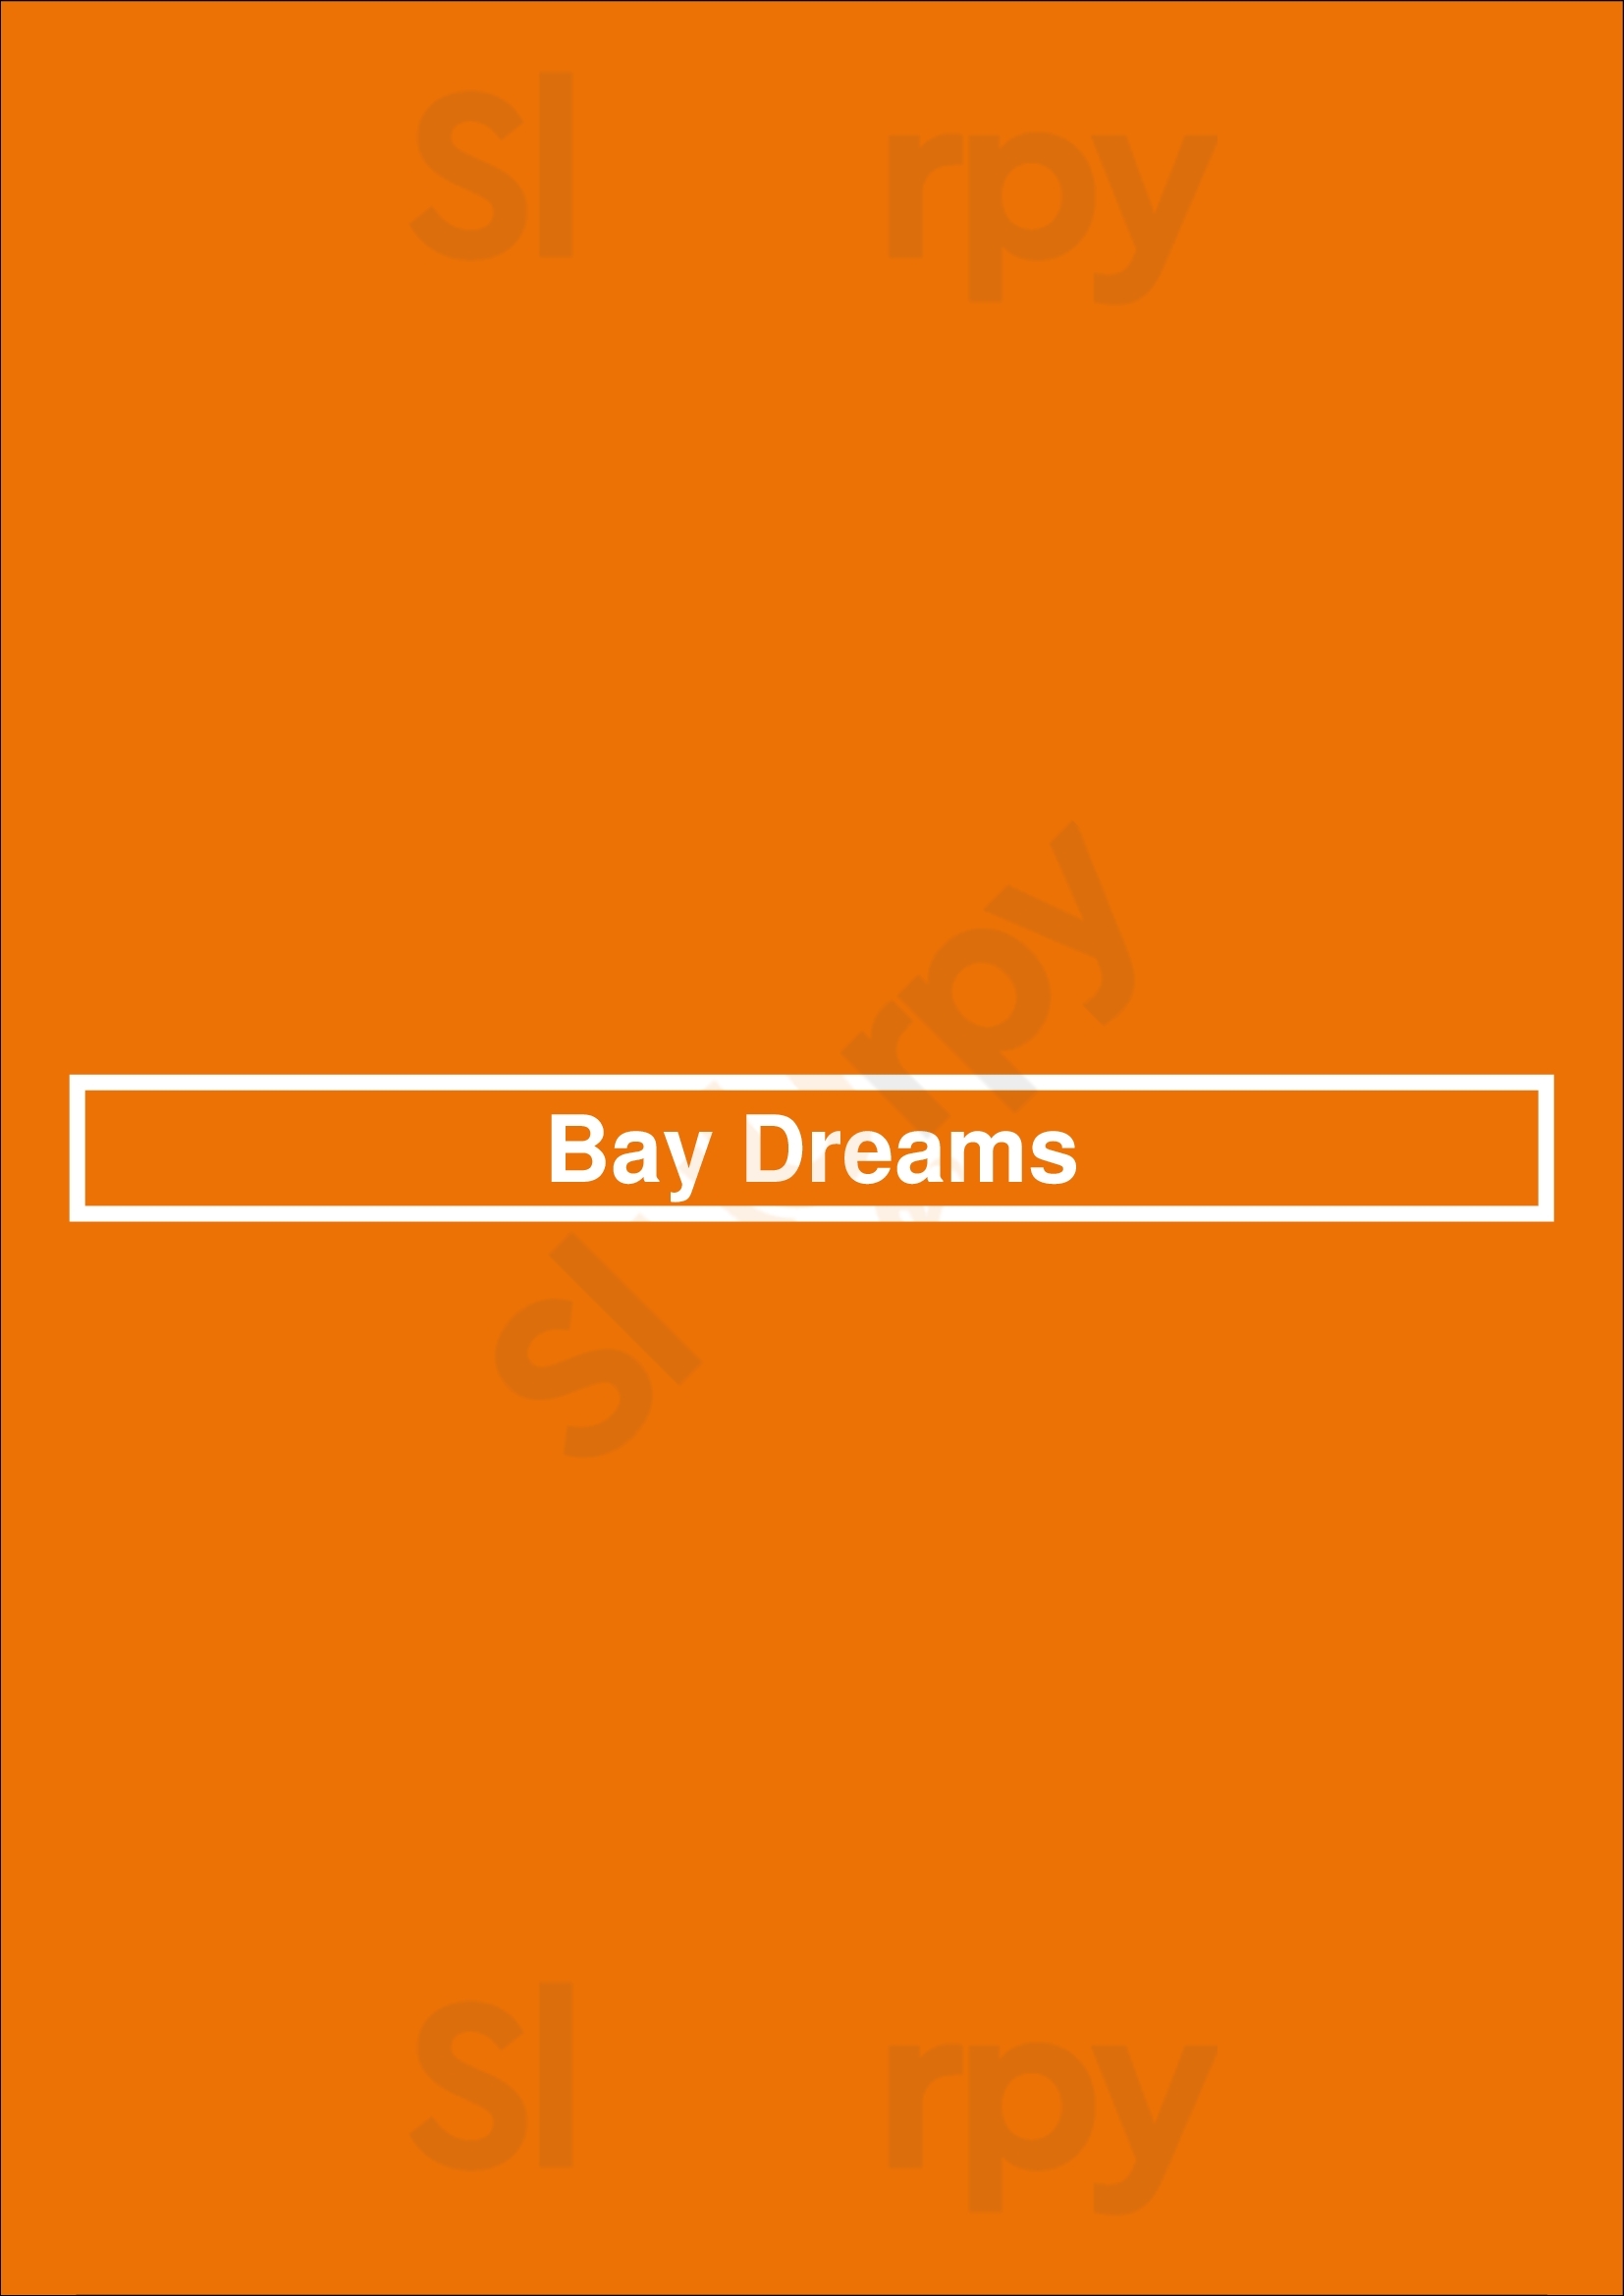 Bay Dreams Scheveningen Menu - 1